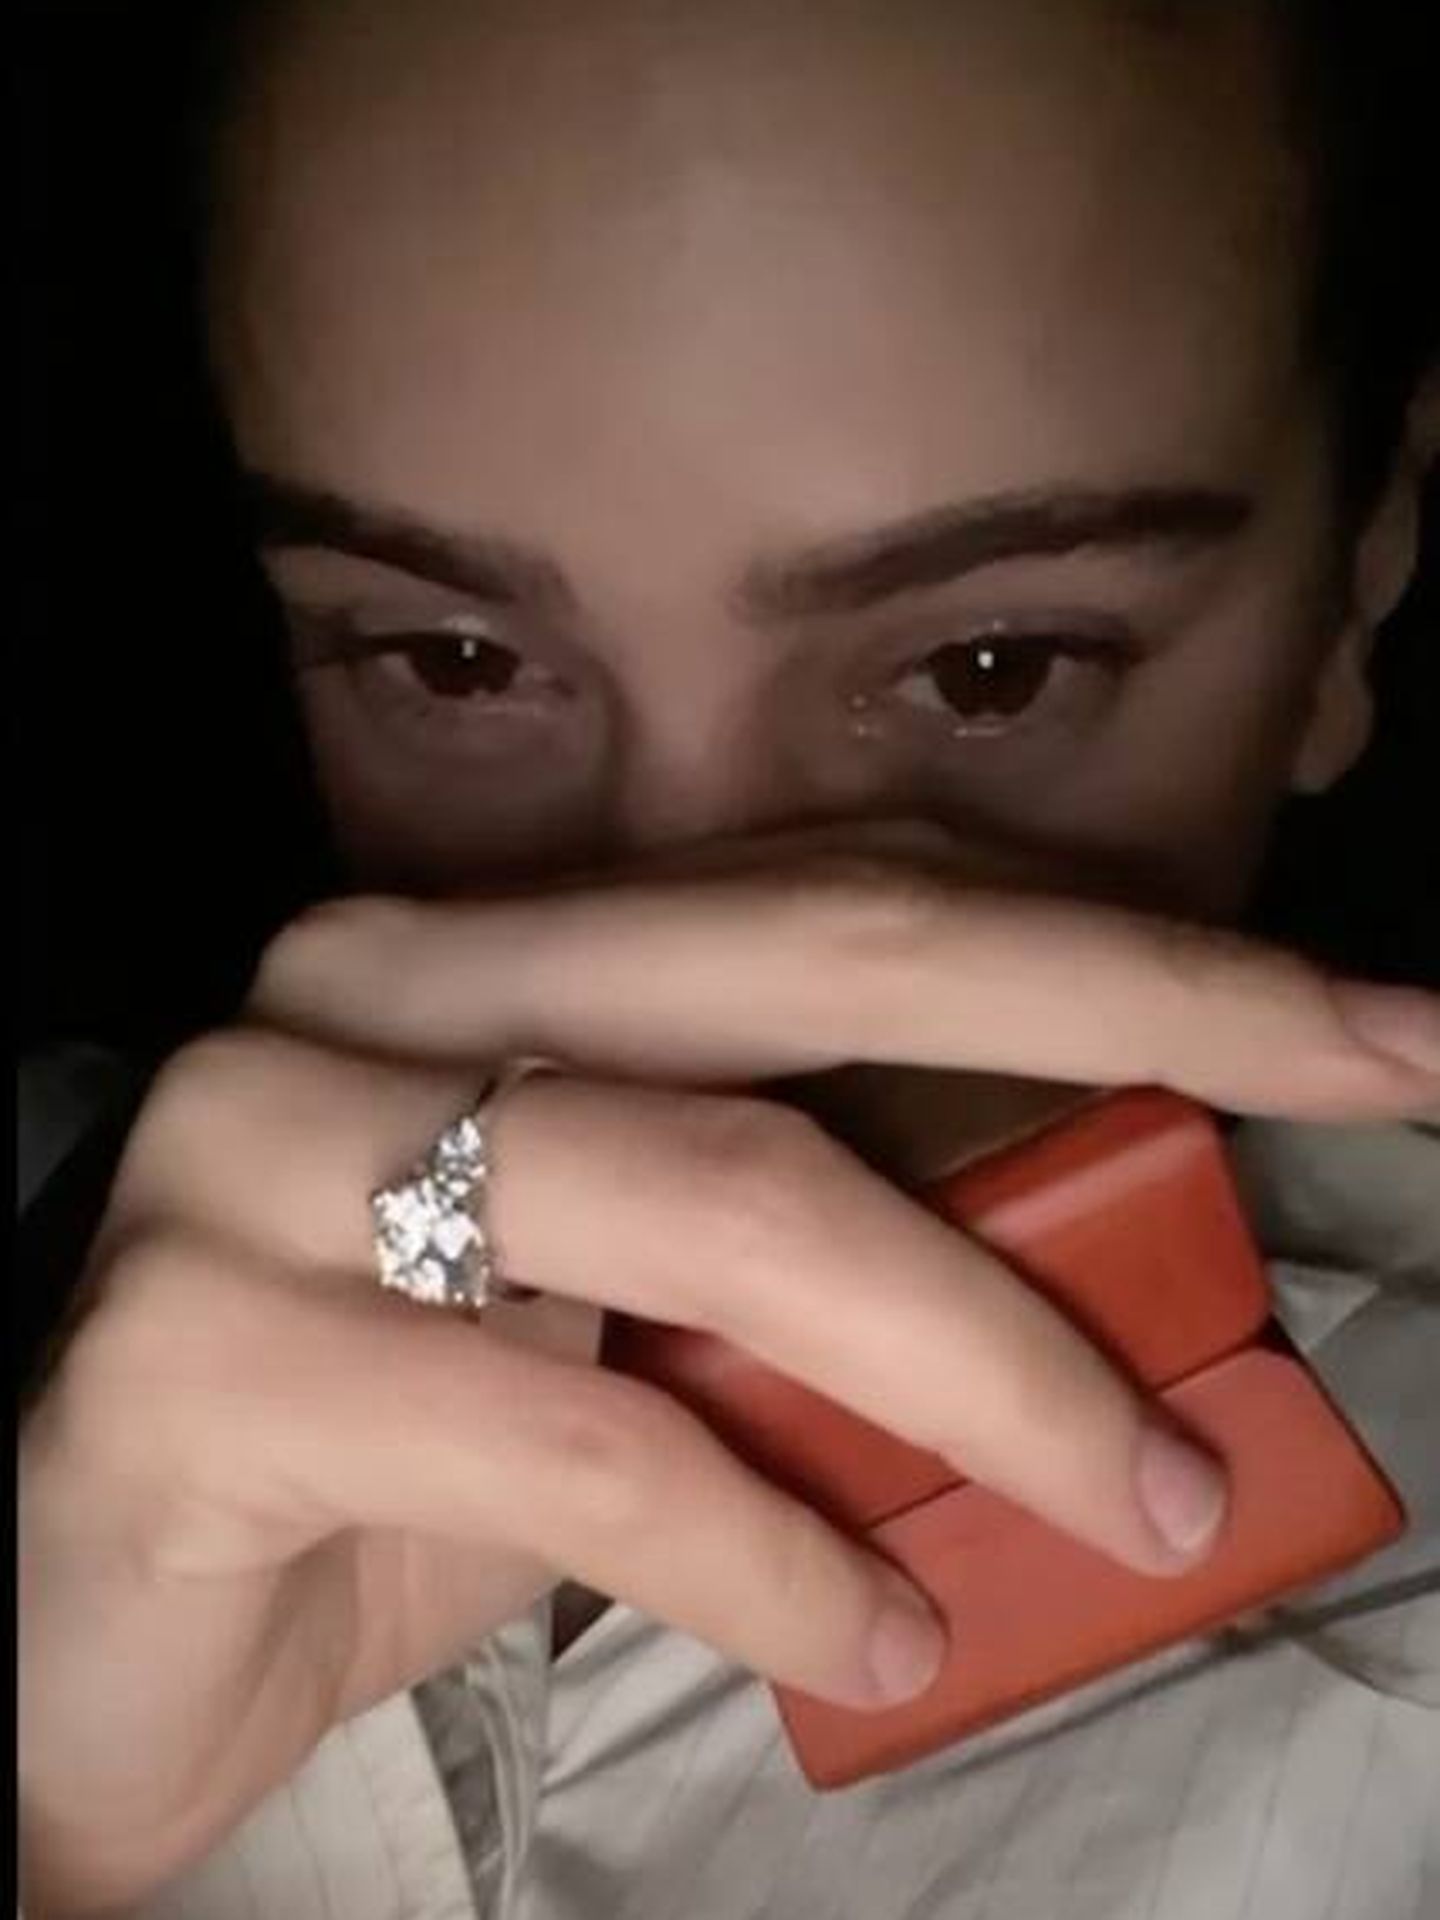 Una captura del momento de la pedida que muestra en 'Beso', donde se ve el anillo. (Youtube)